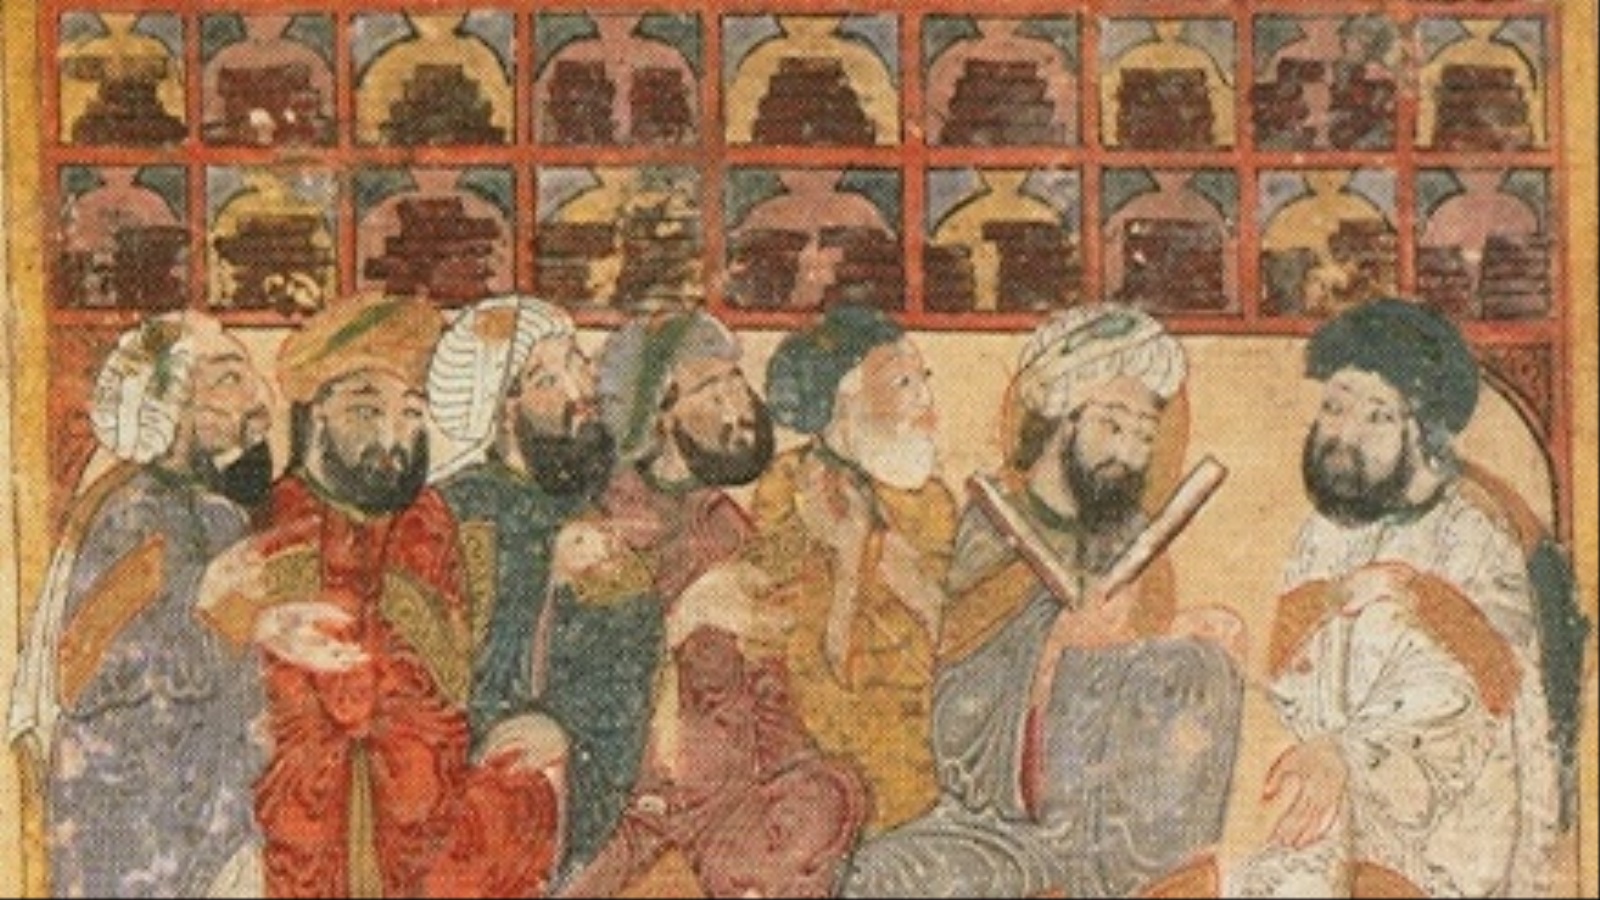 أنشأ الخلفاء والولاة والعلماء مكتبات ومدارس انتشرت في كل بقاع العالم الإسلامي، وقد أُلحقت بمعظمها 